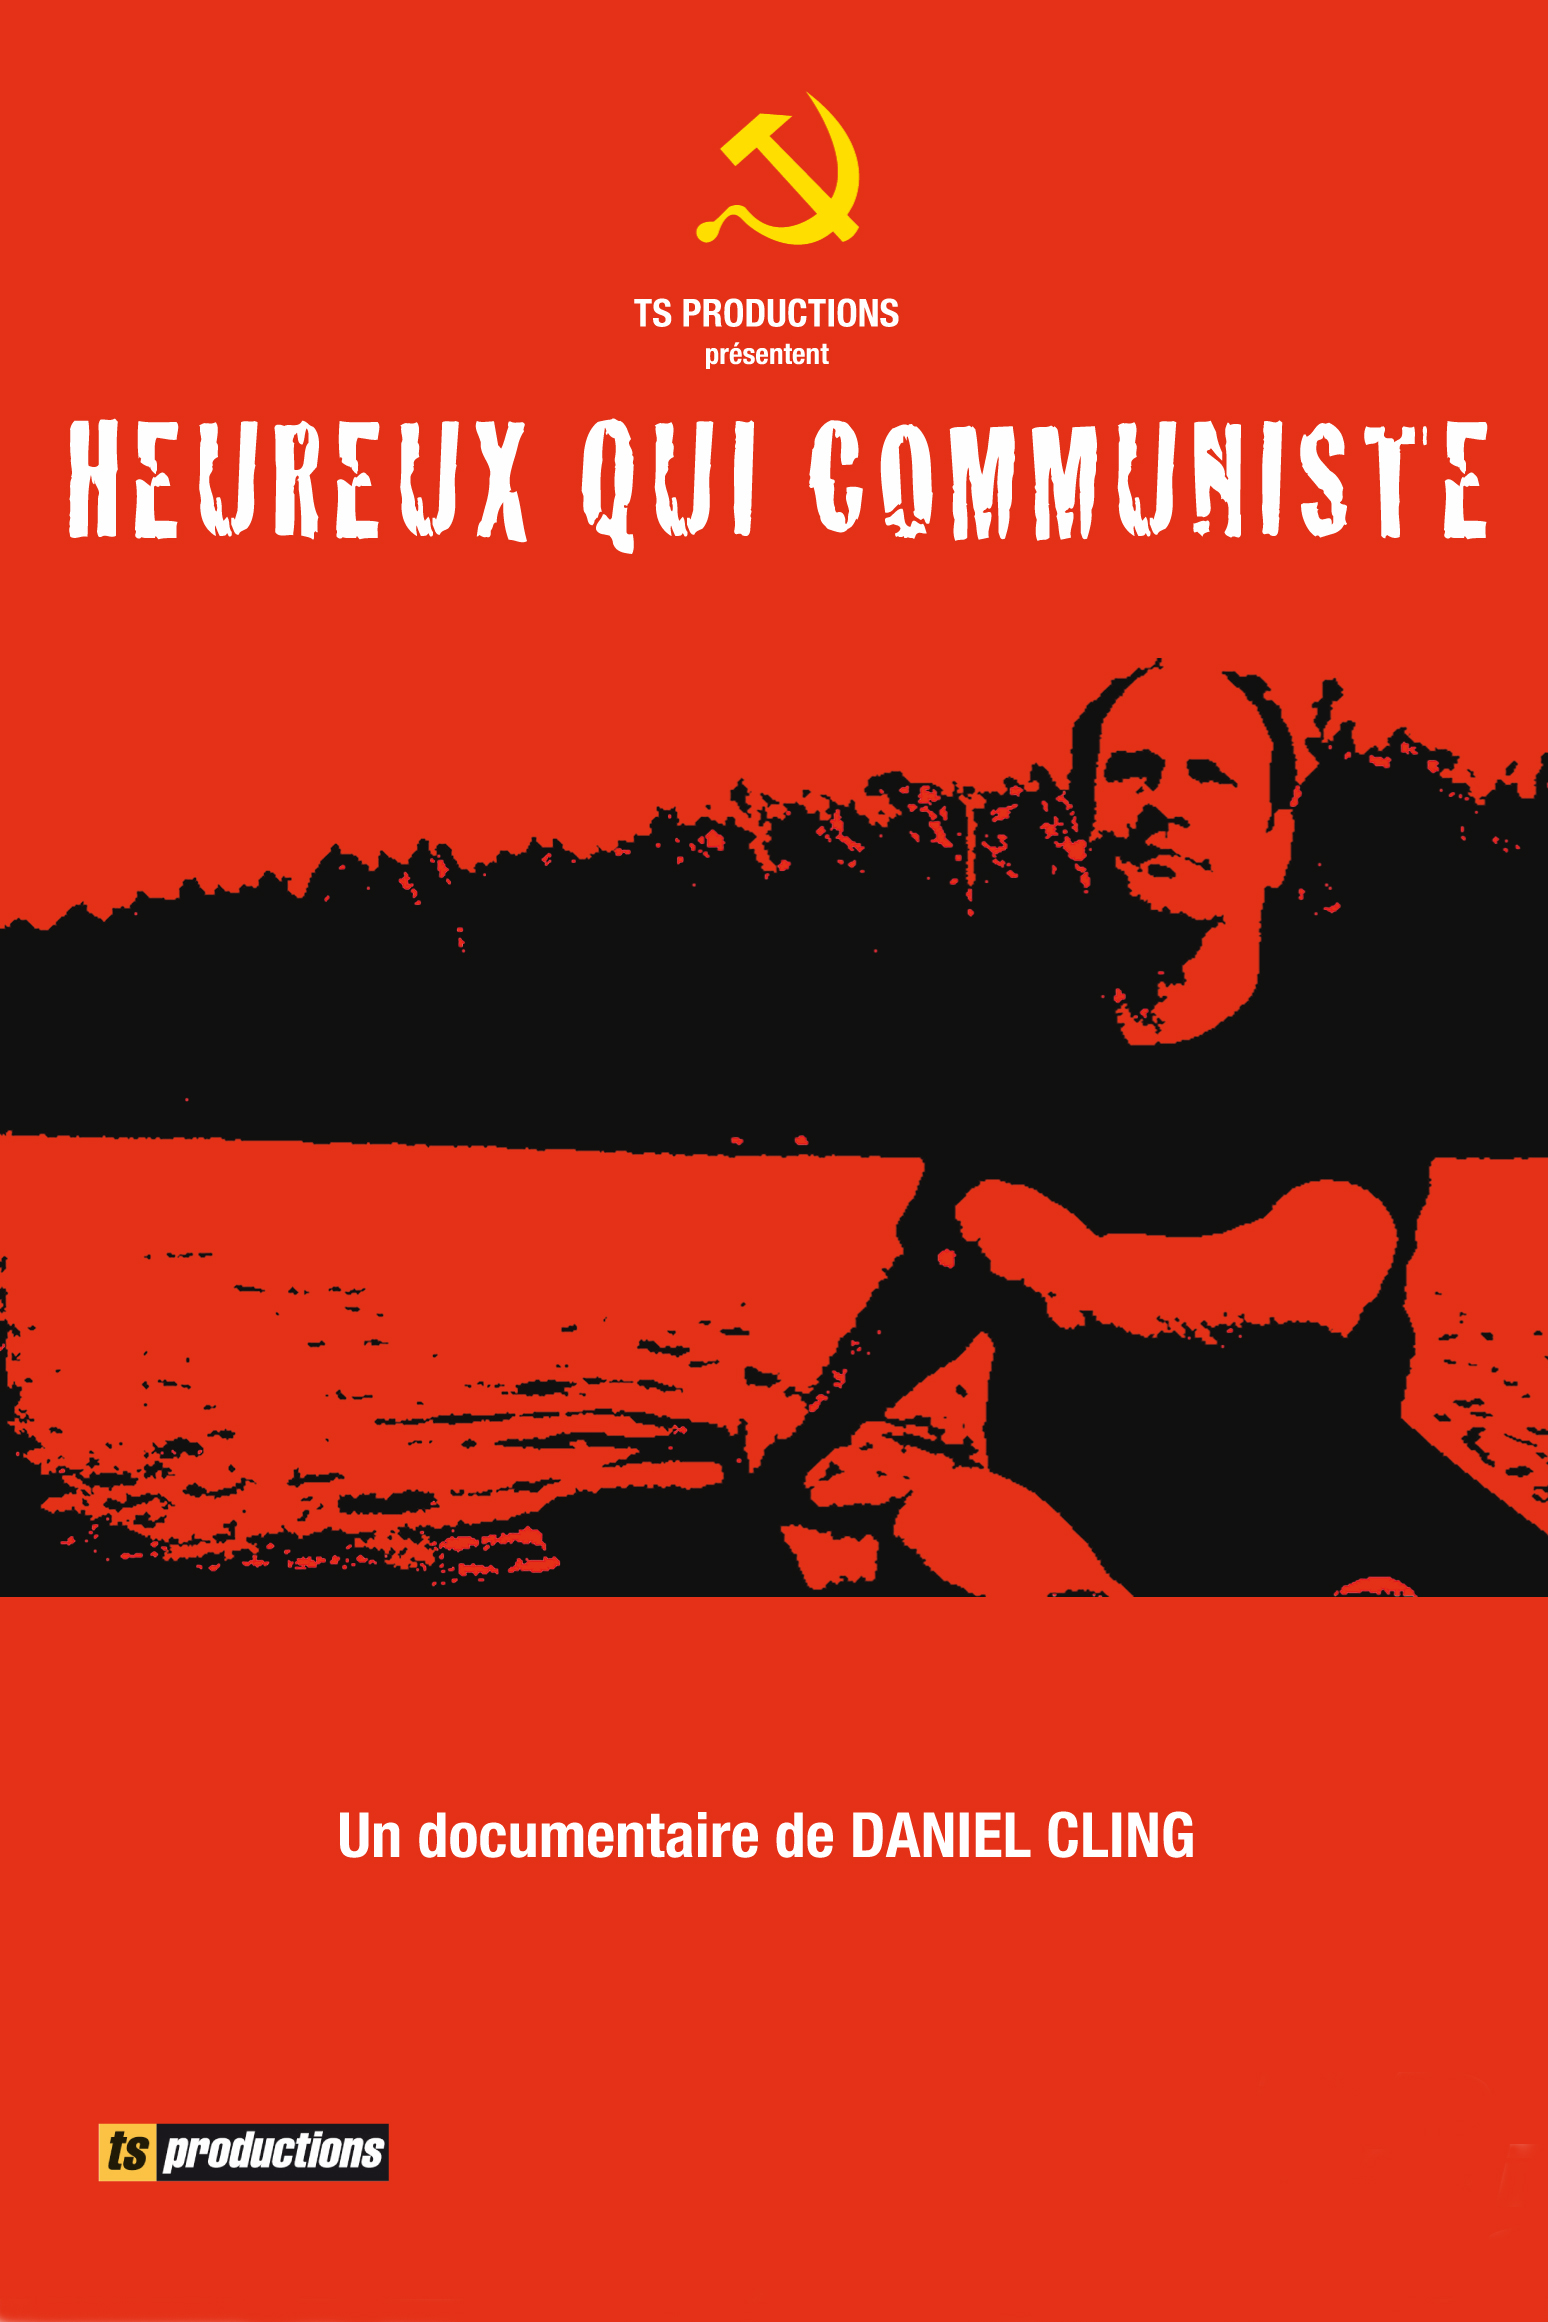 HEUREUX QUI COMMUNISTE - Daniel Cling